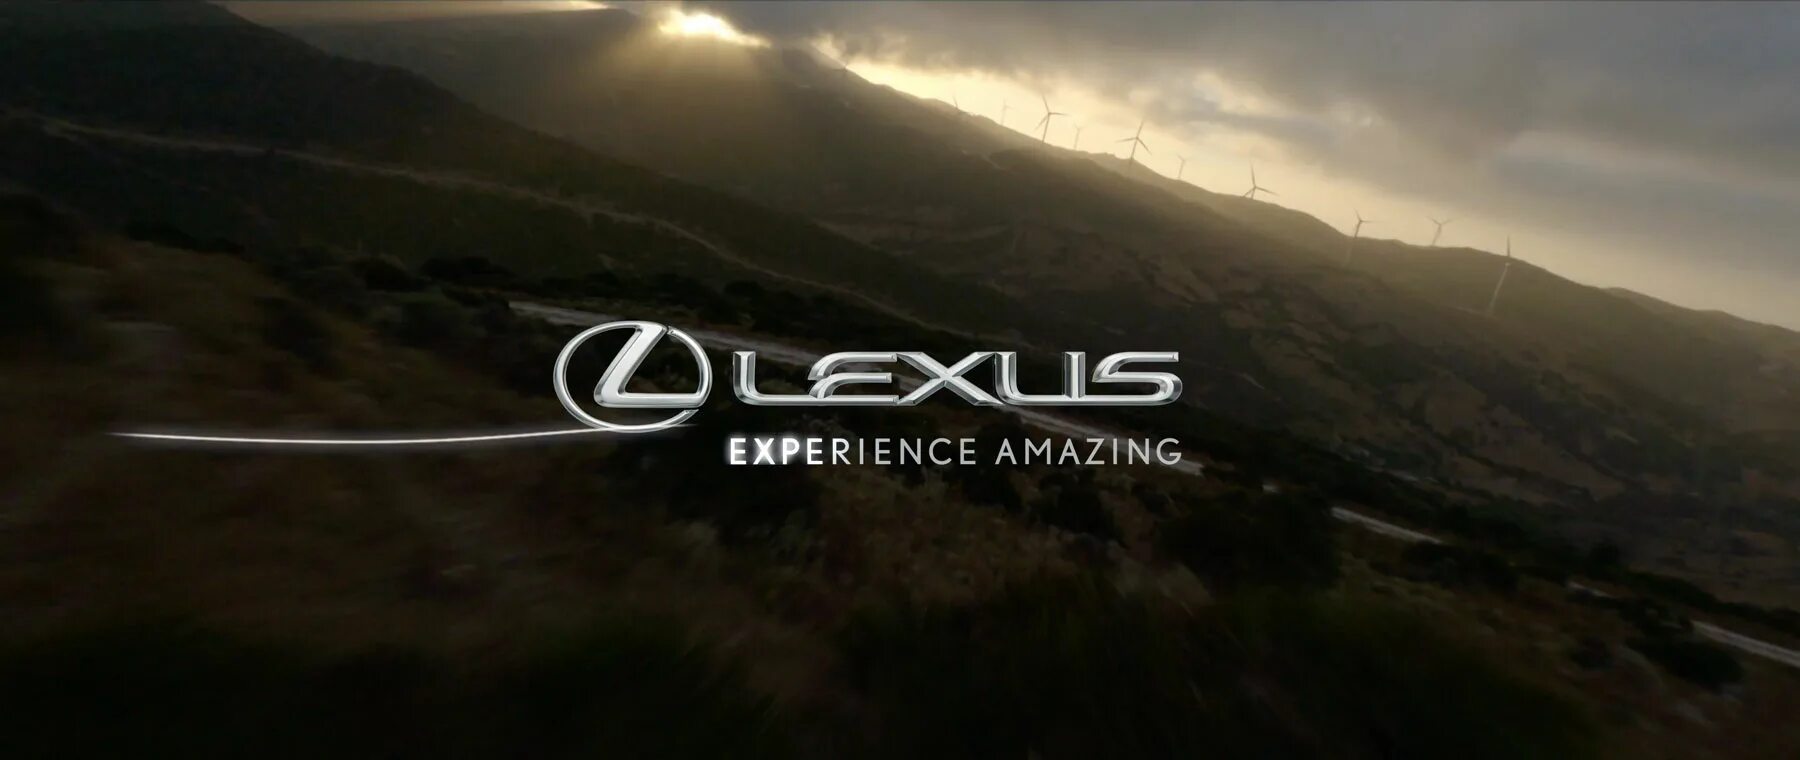 Lexus experience amazing. Experience логотип. Картинка experience. Lexus experience amazing logo. Experience amazing